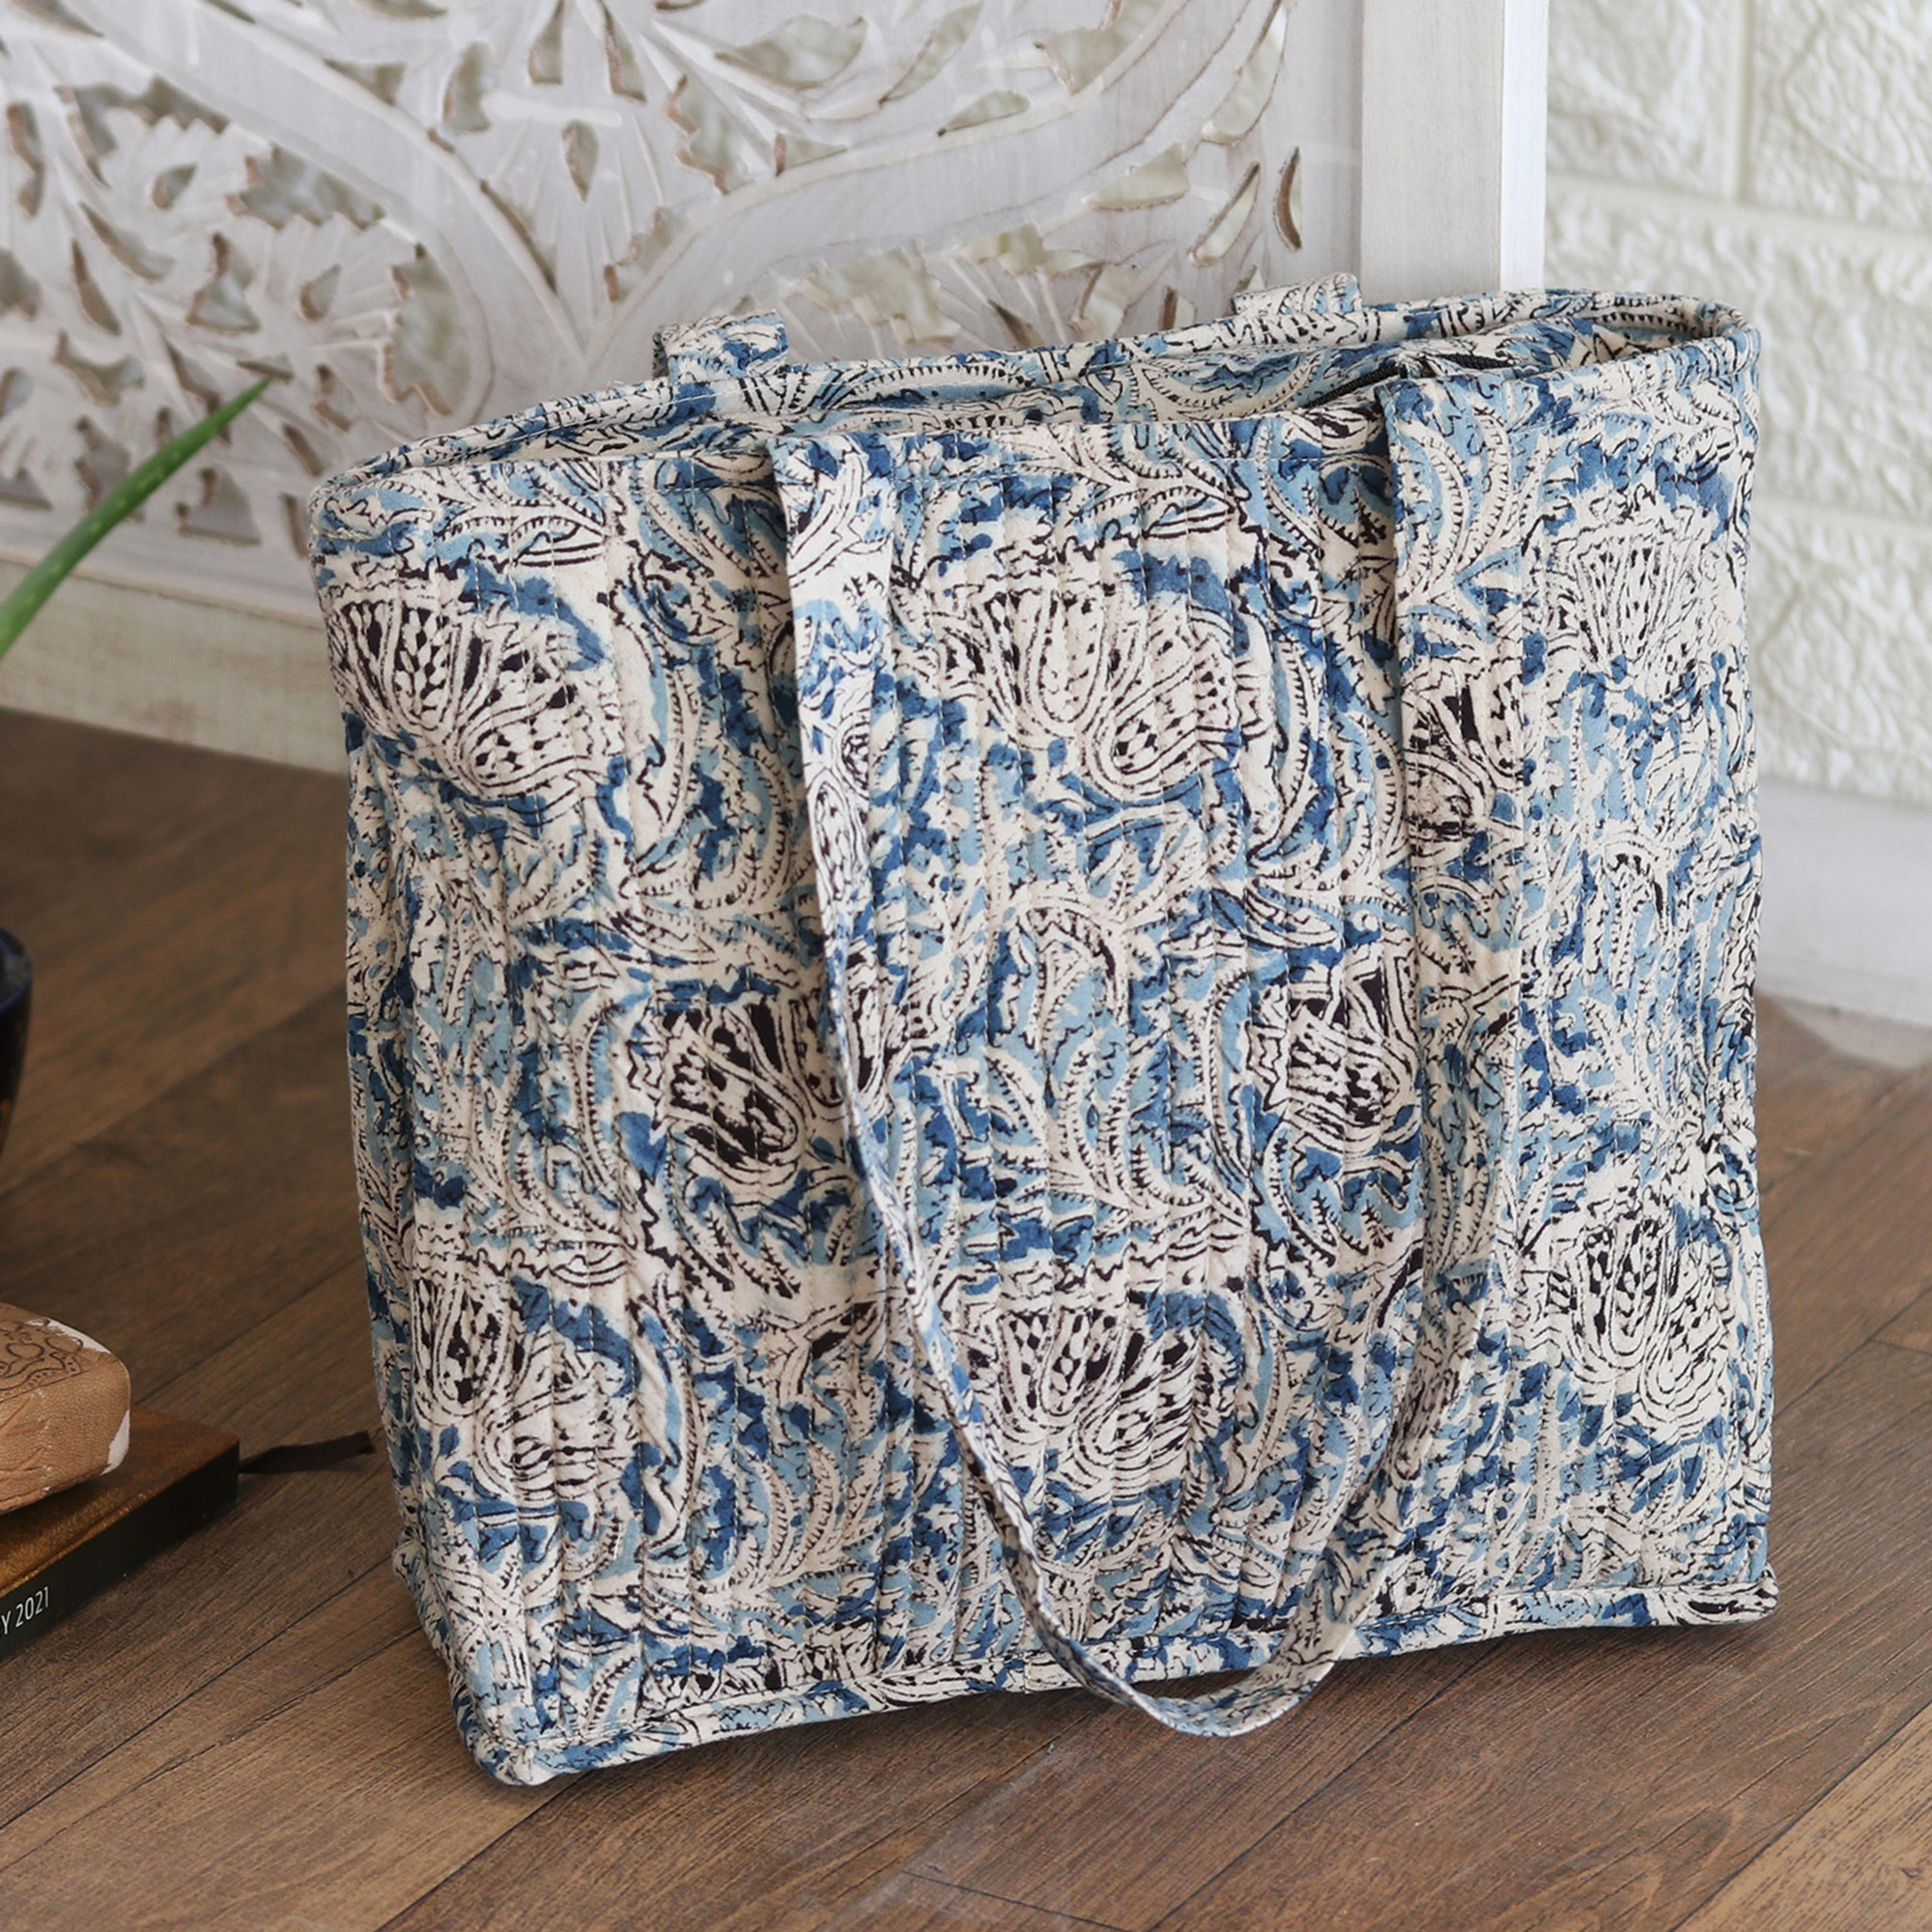 Quilting tote bag #blue - Shop nifeile-okinawa Handbags & Totes